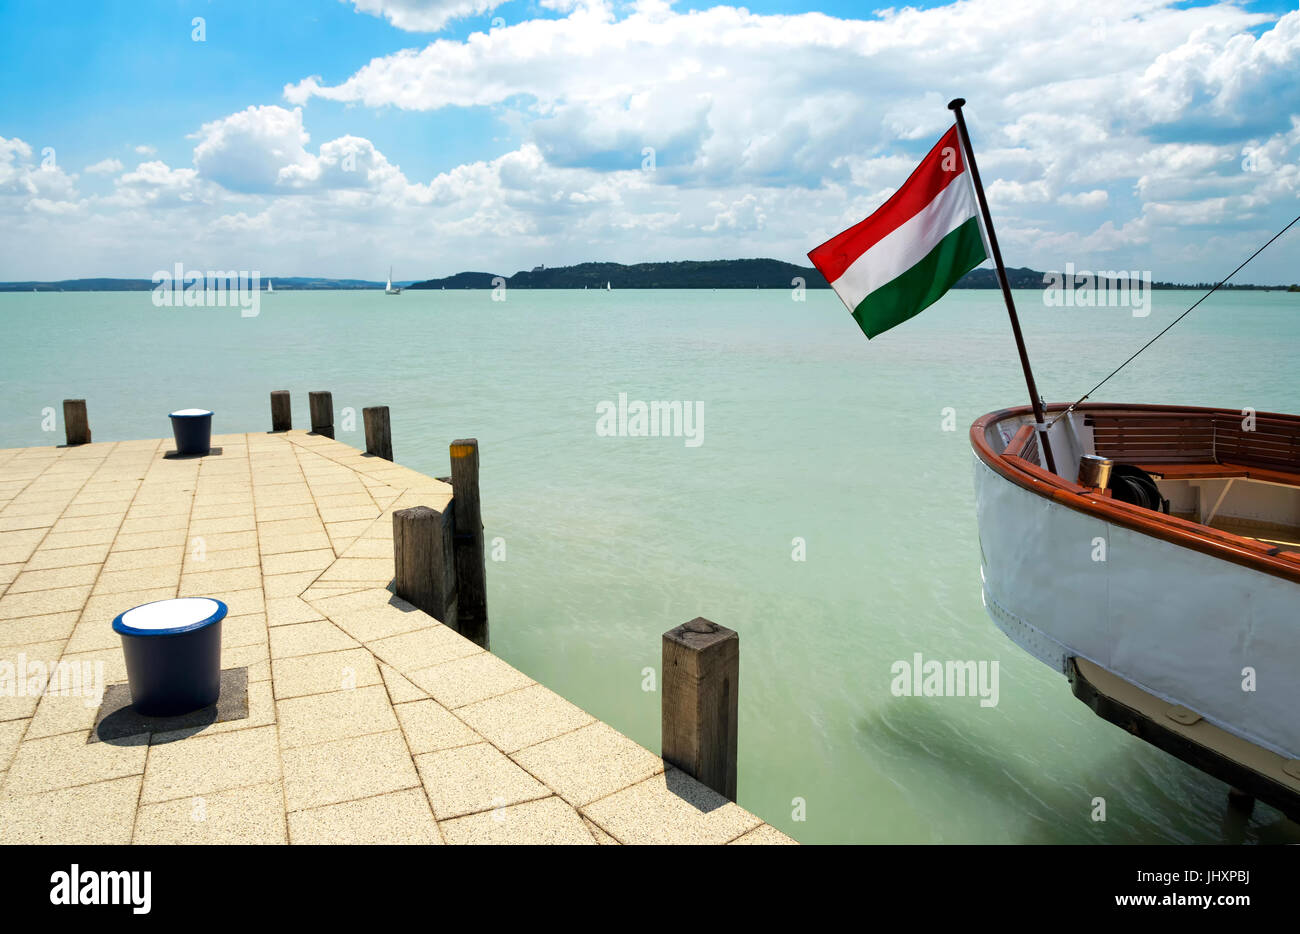 Port of Balatonfured at Lake Balaton, Hungary Stock Photo